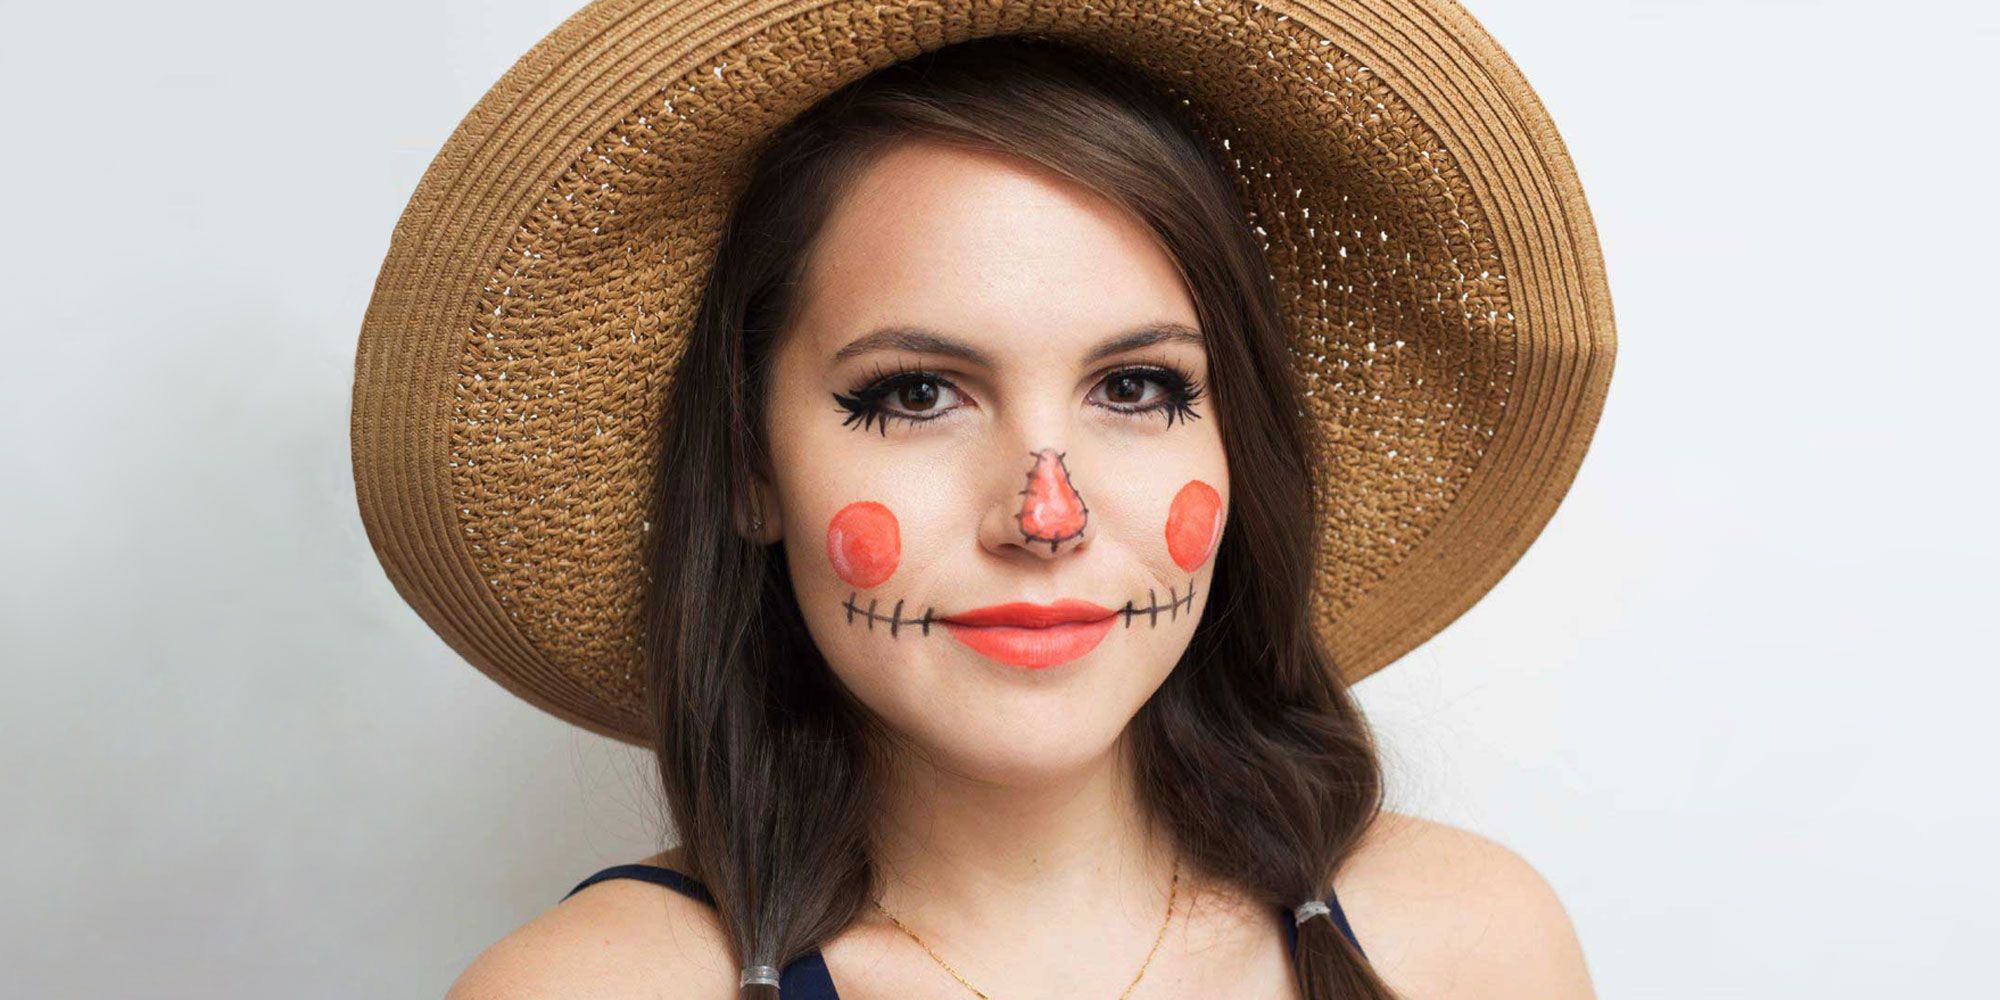 Scarecrow Halloween Makeup Tutorial for 2020 - Easy DIY Halloween Costume